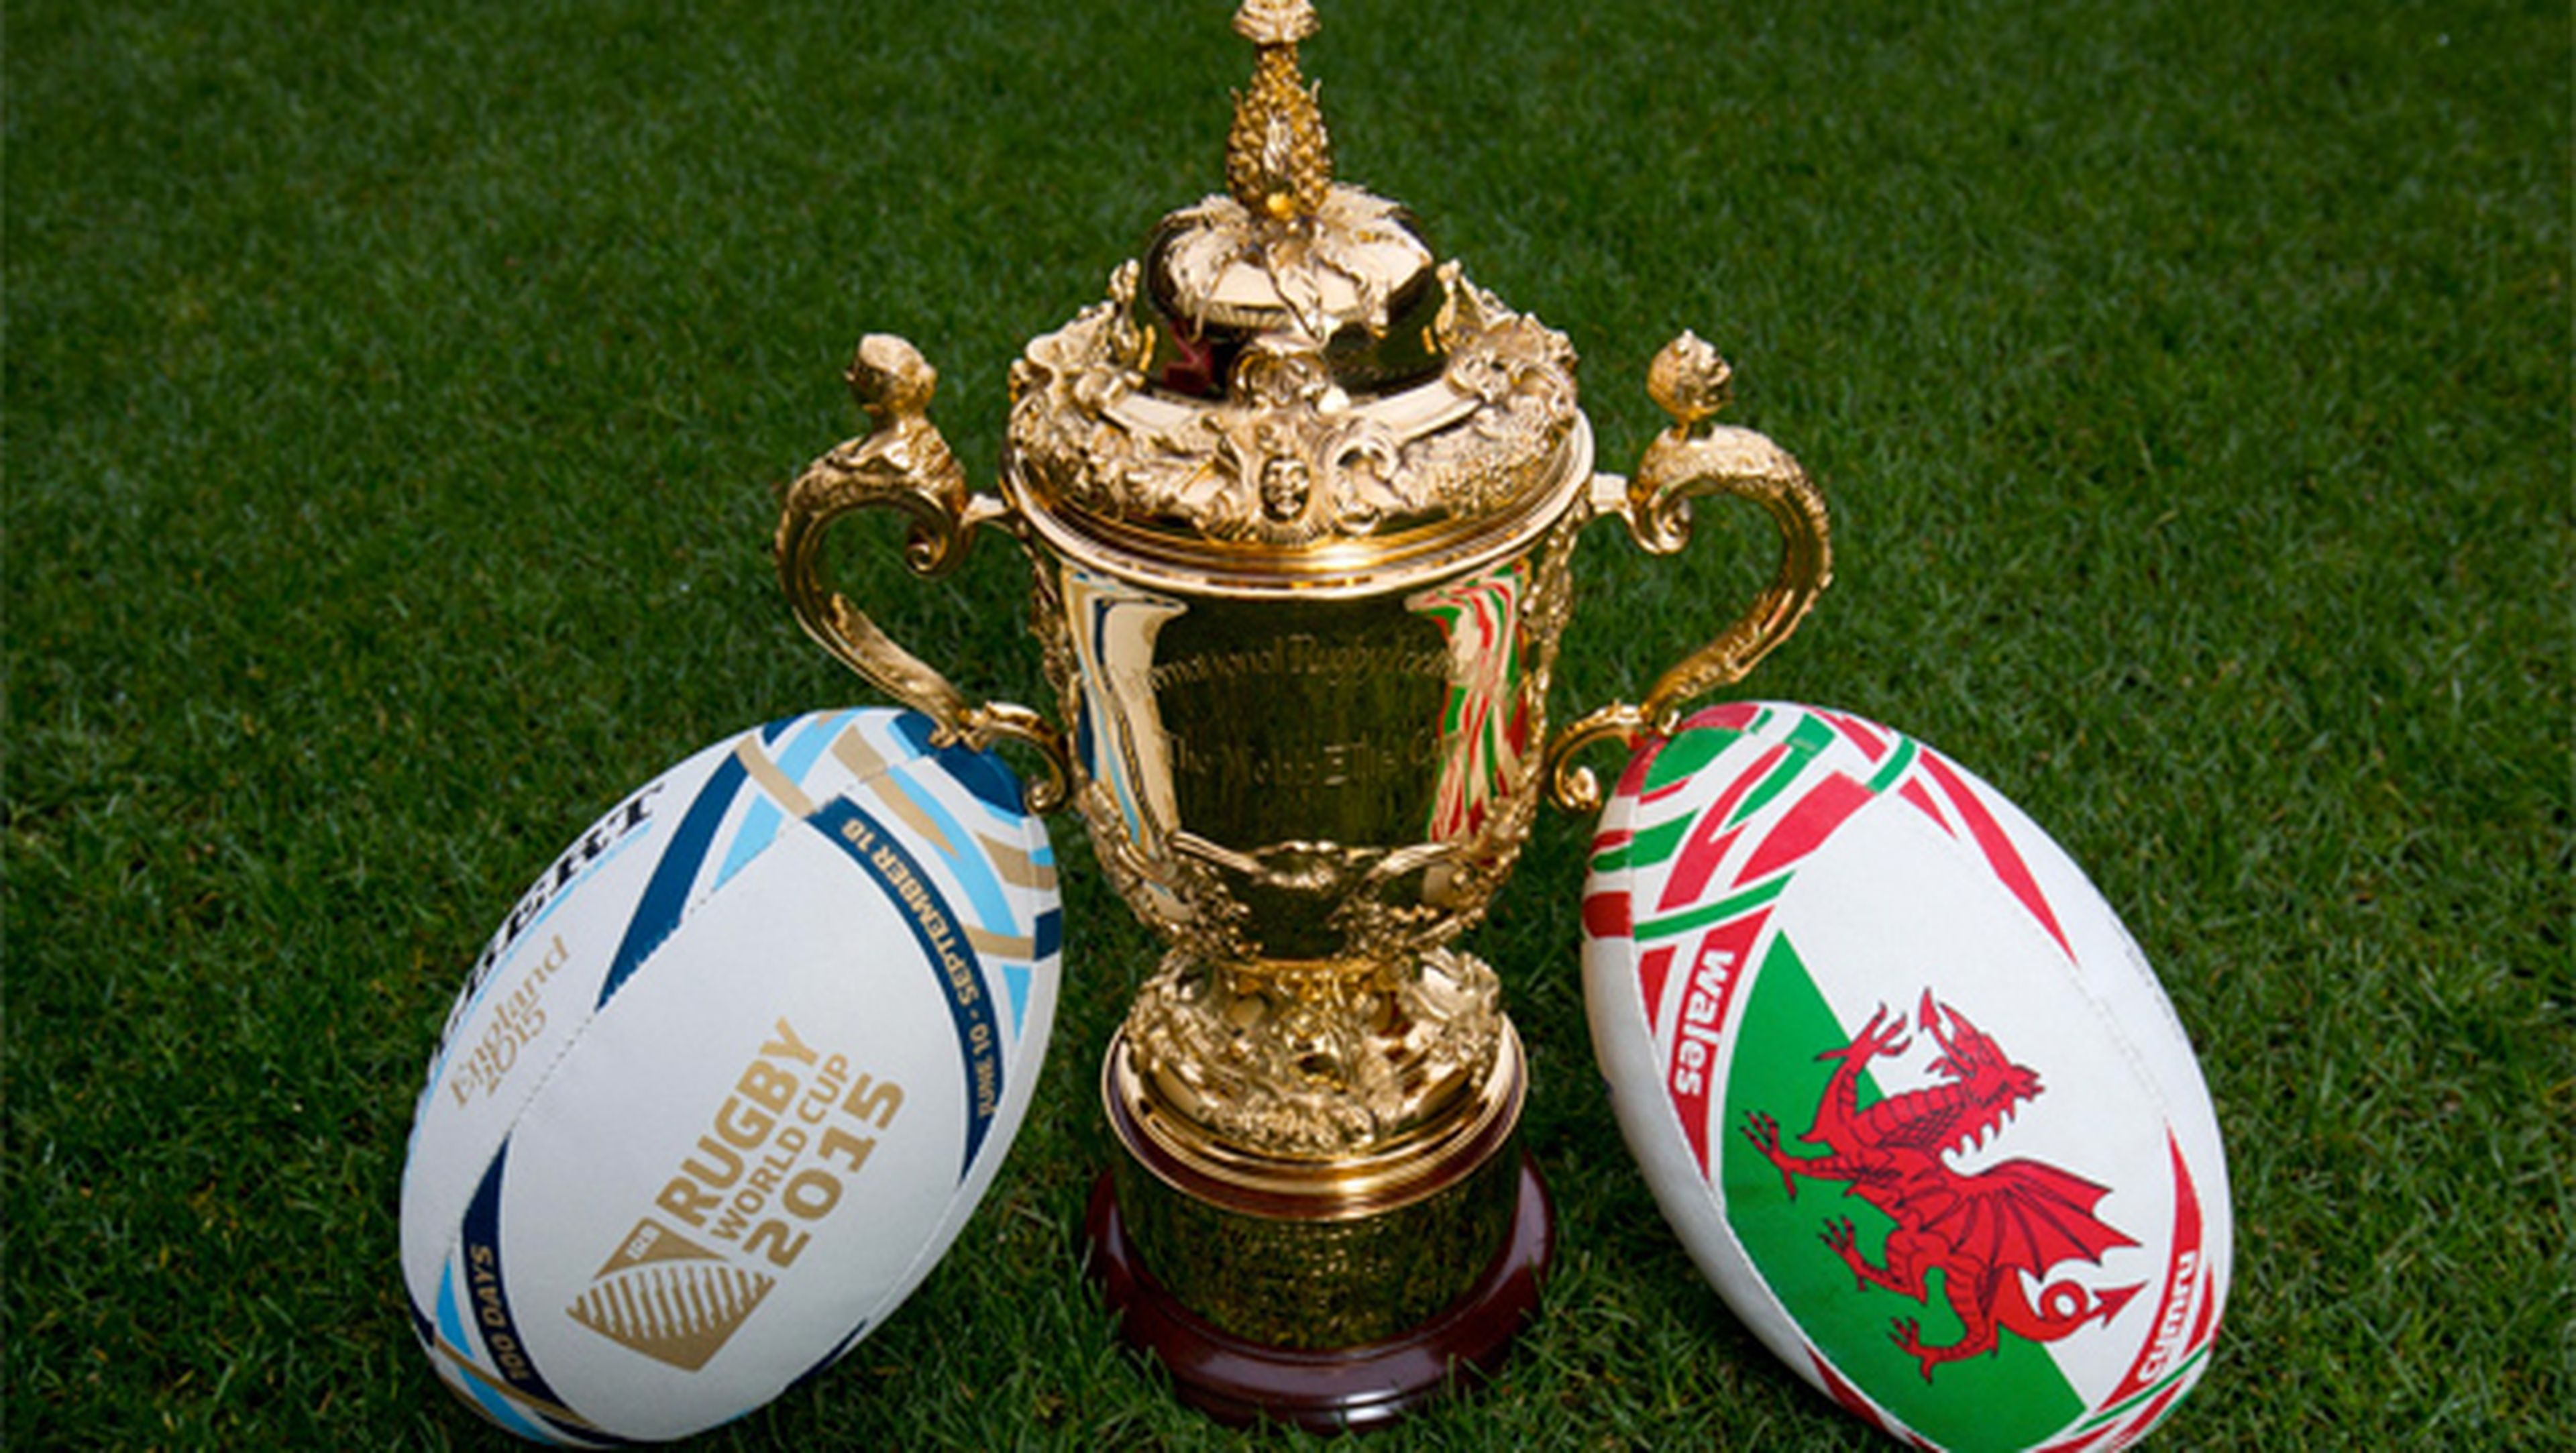 Dónde ver online y en directo el Mundial de Rugby 2015 por televisión en Internet